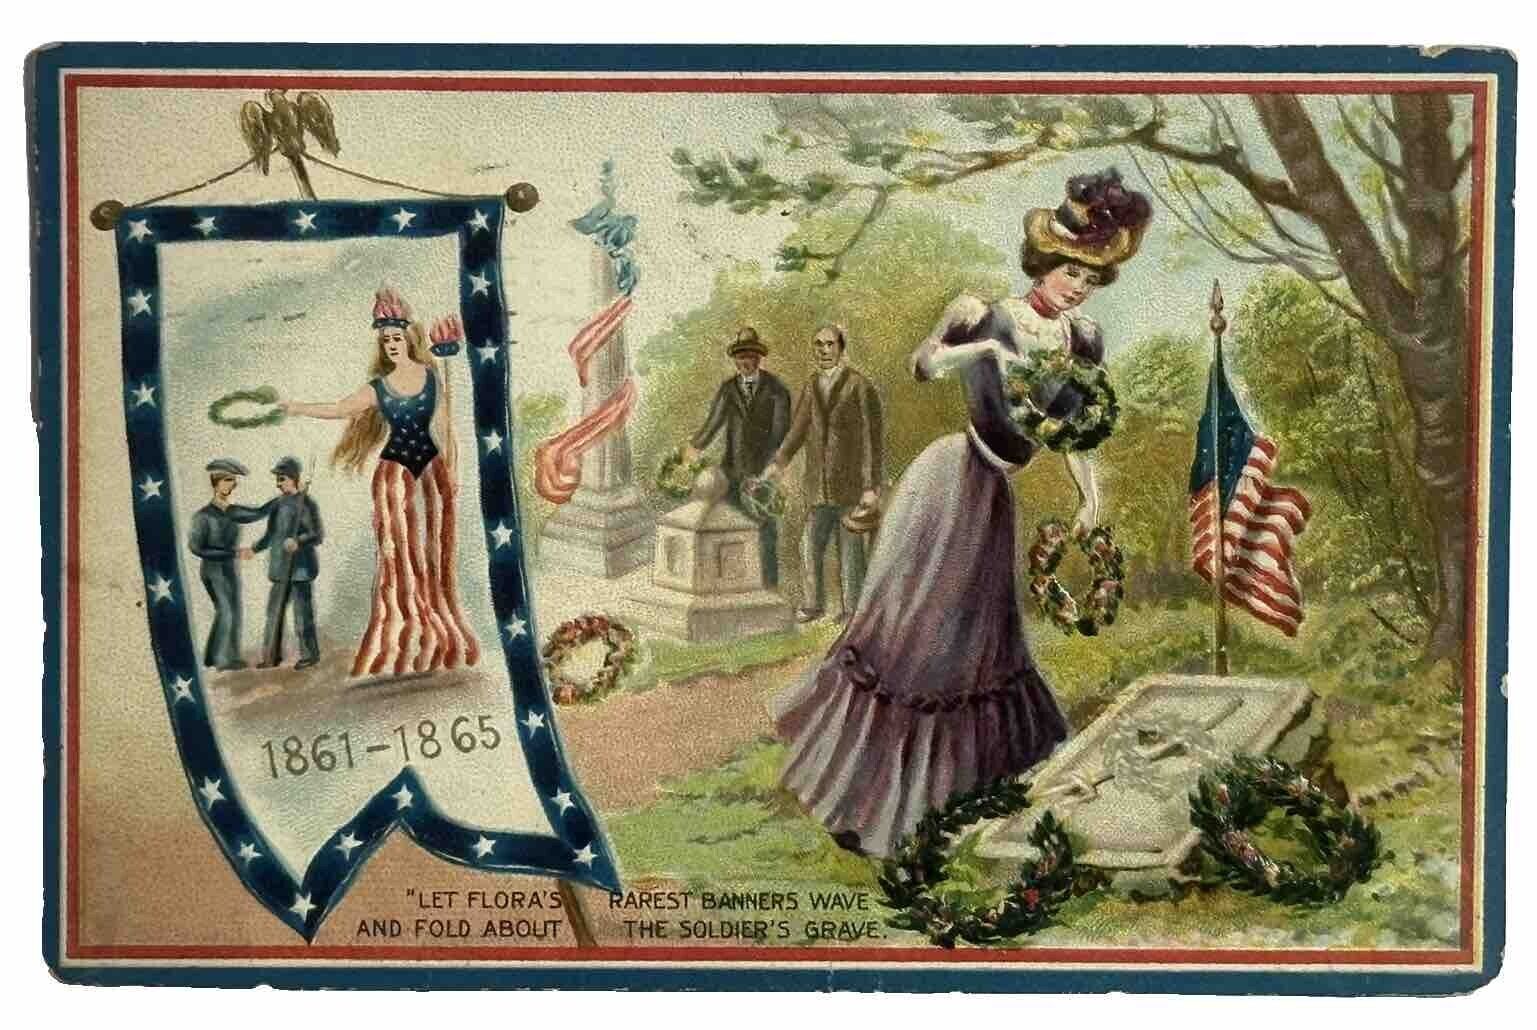 Tucks GAR Patriotic Postcard Decoration Day 158 Let Floras Rarest Banner Wave